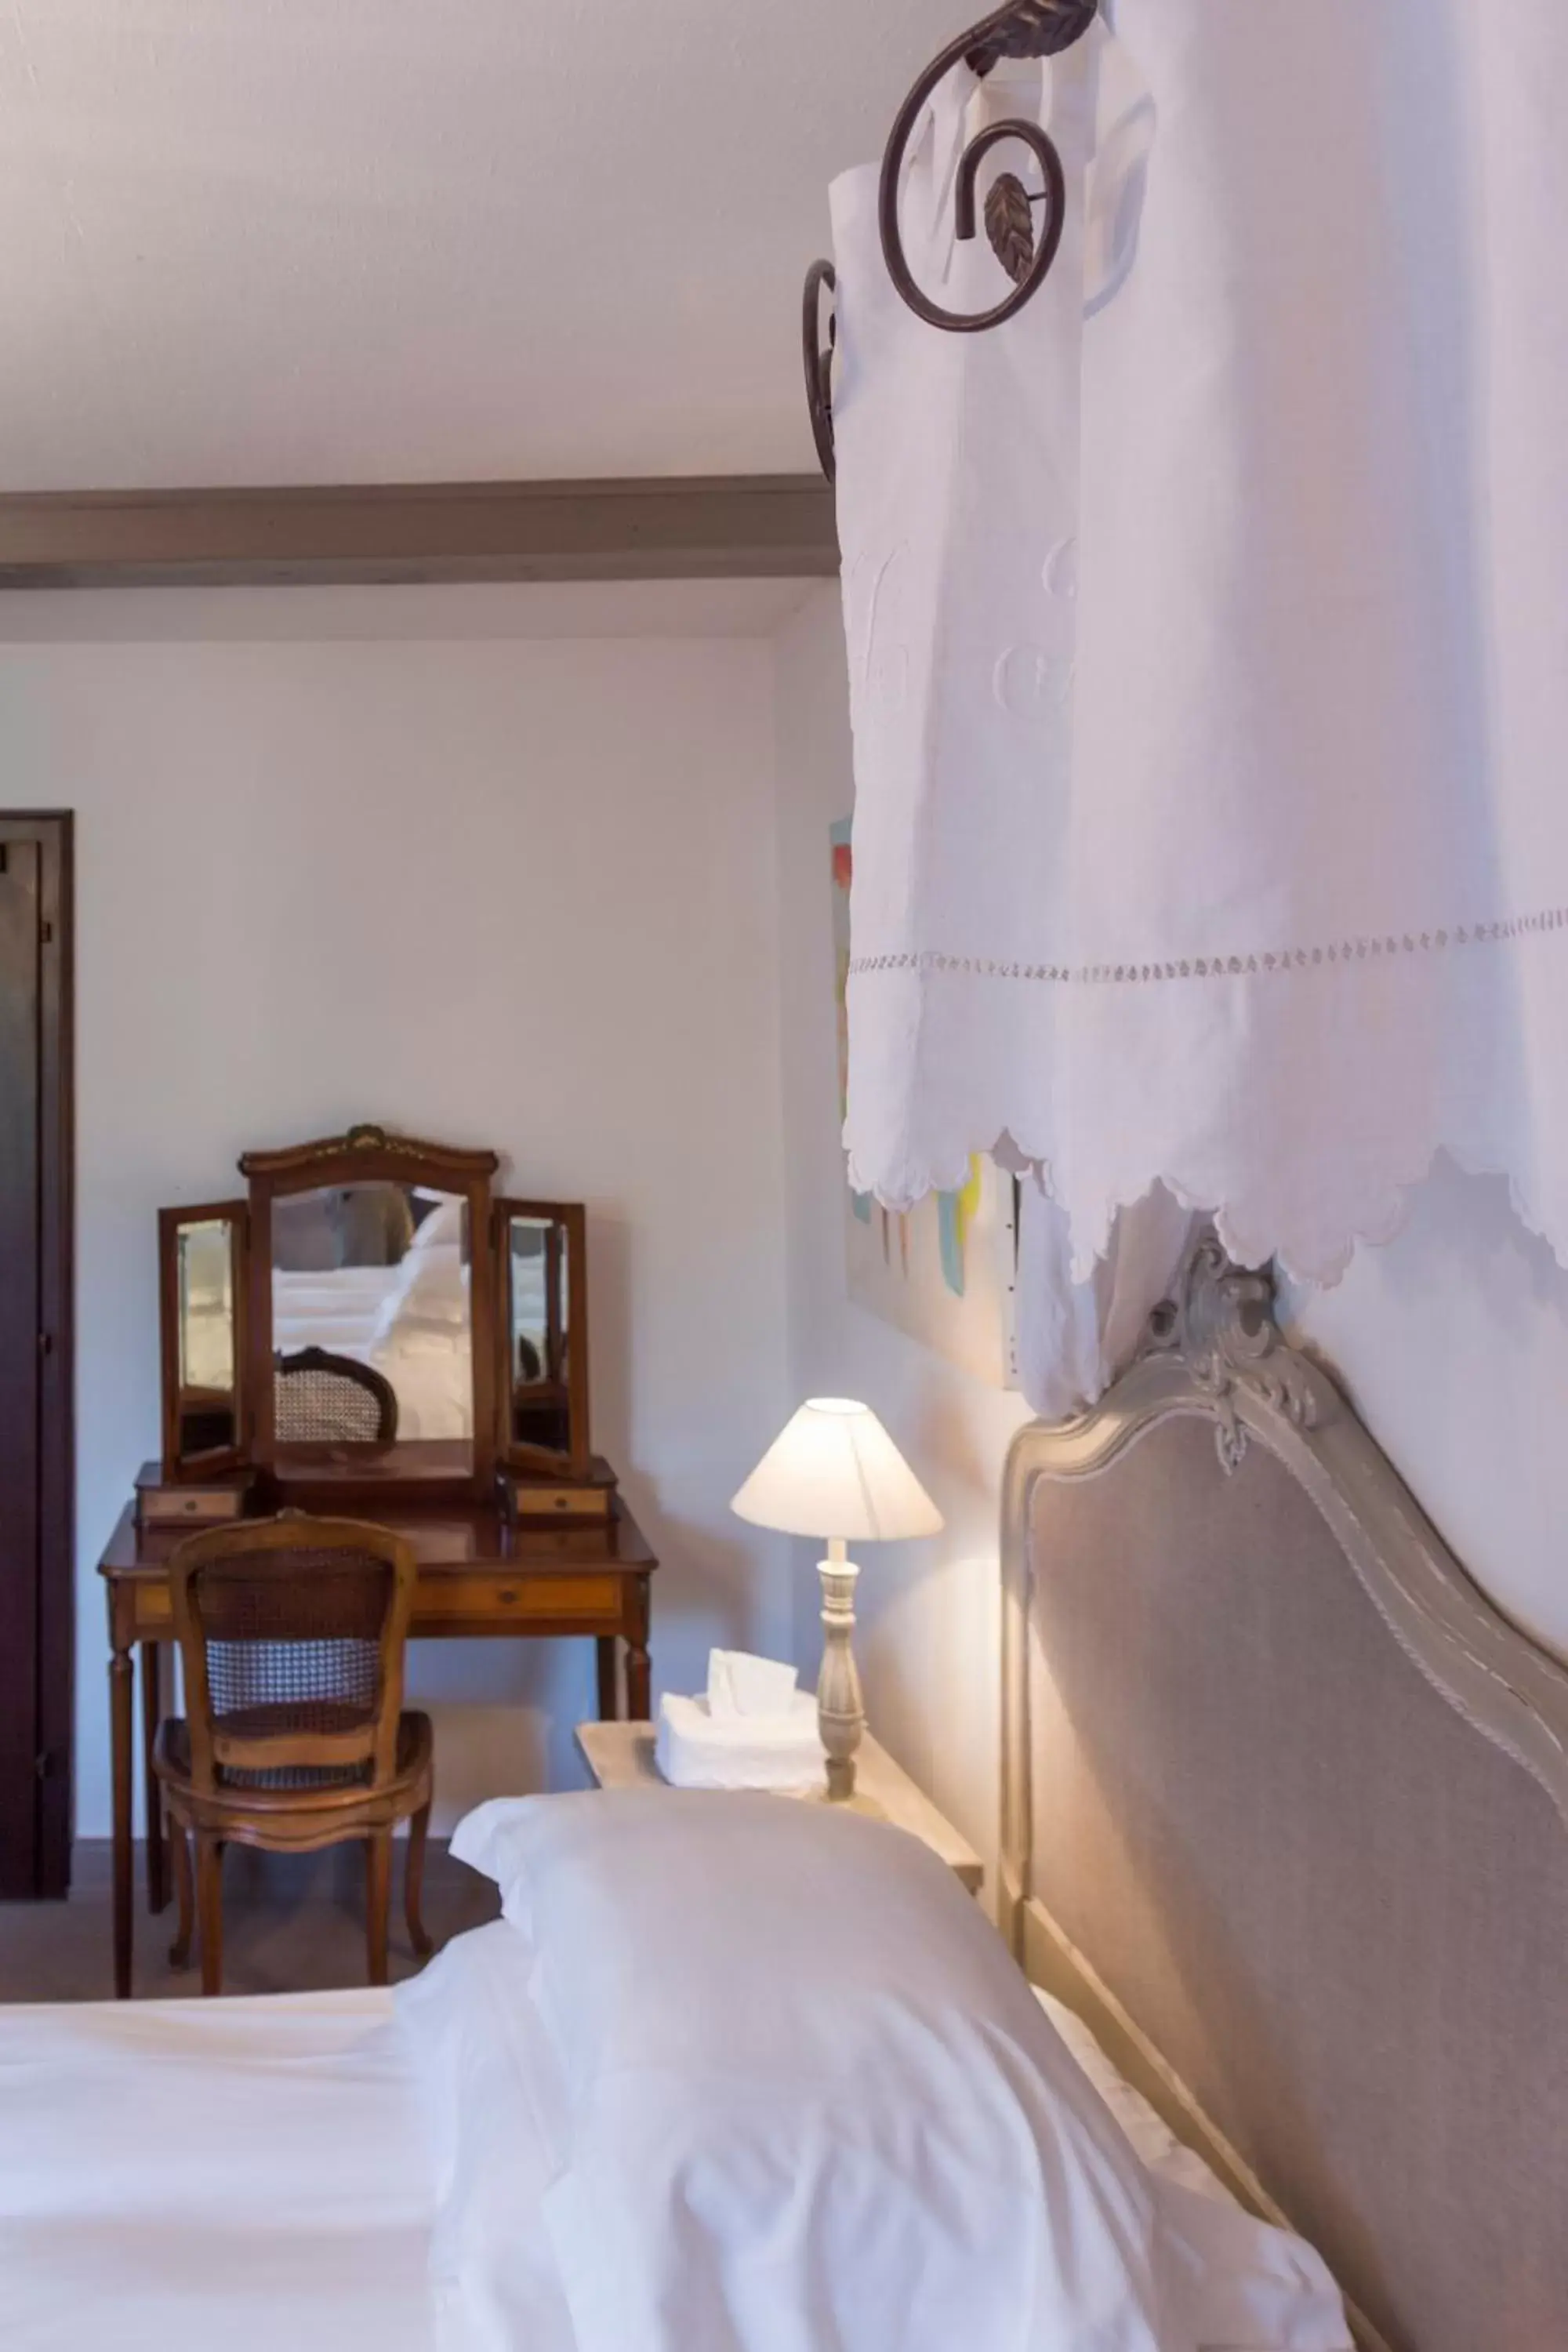 Bed, Room Photo in Domaine de Beaupré - Hotel The Originals Relais